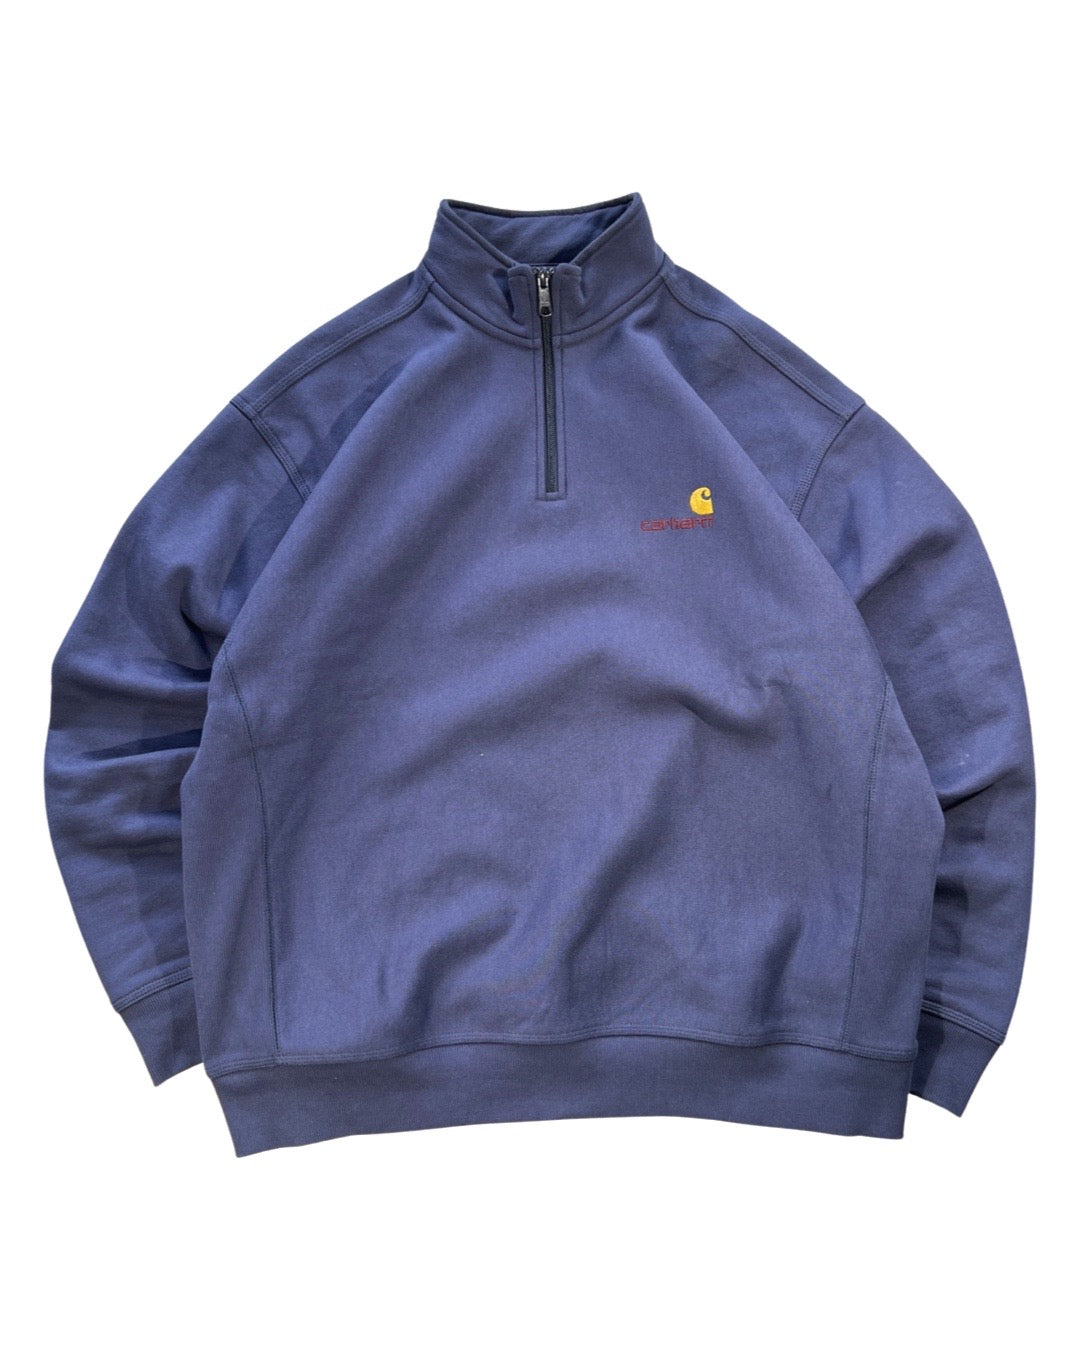 Carhart Sweatshirt - XL